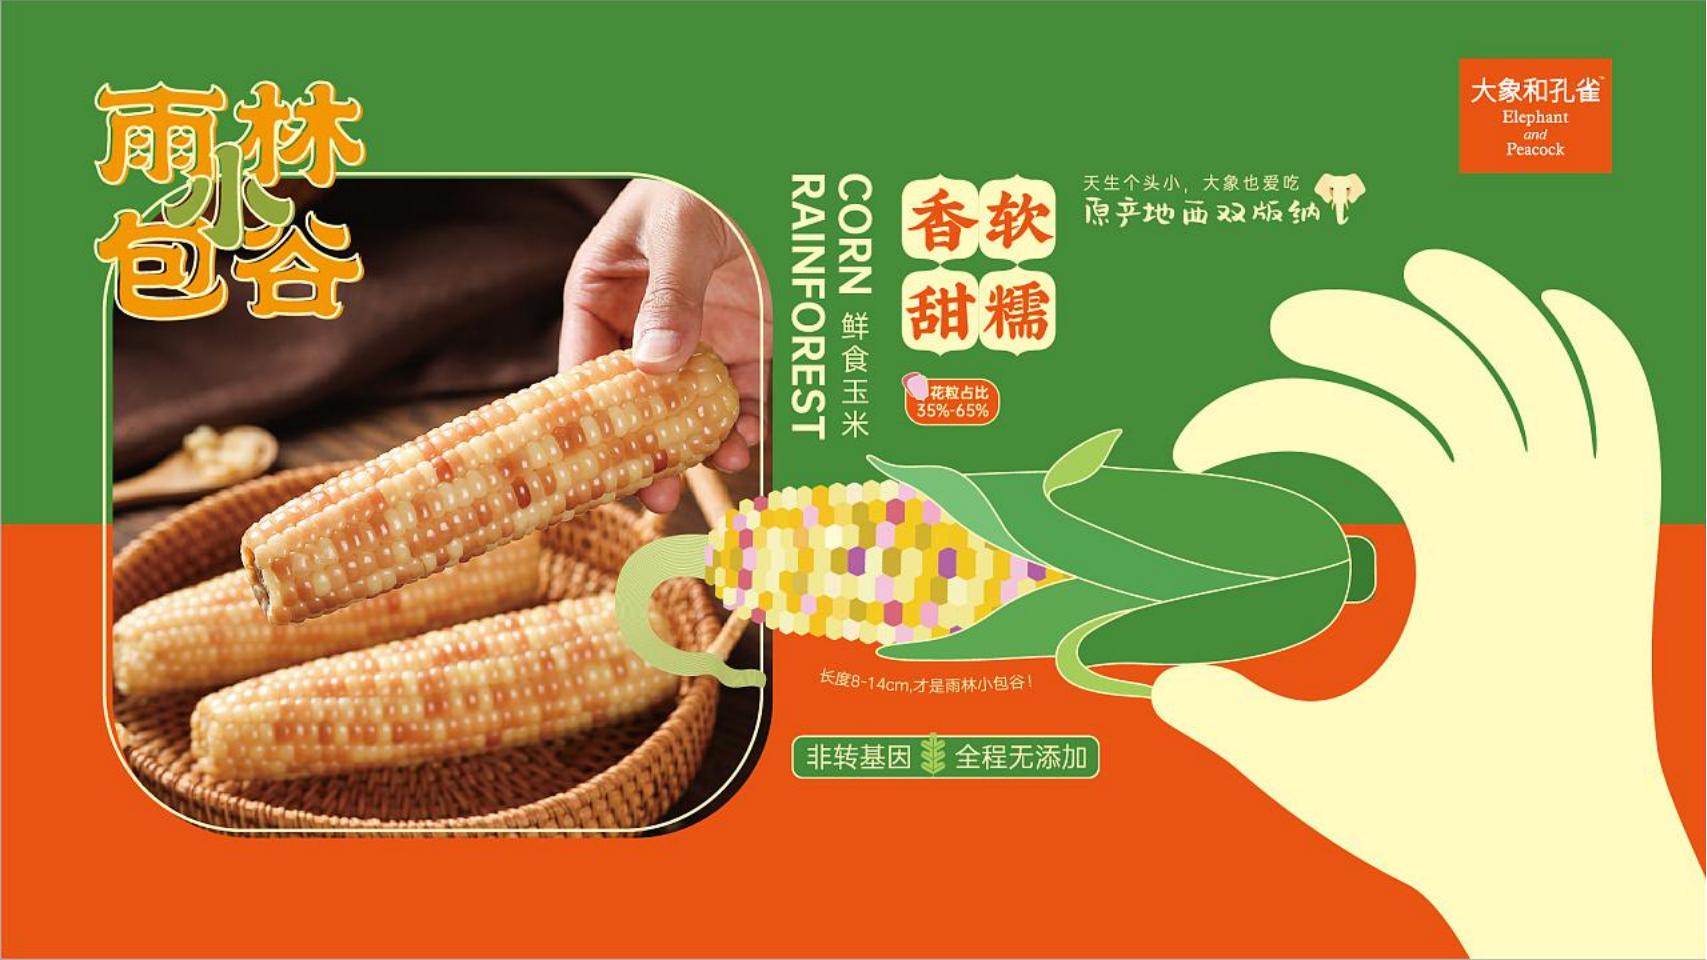 云南好物水果品牌形象包装设计手册